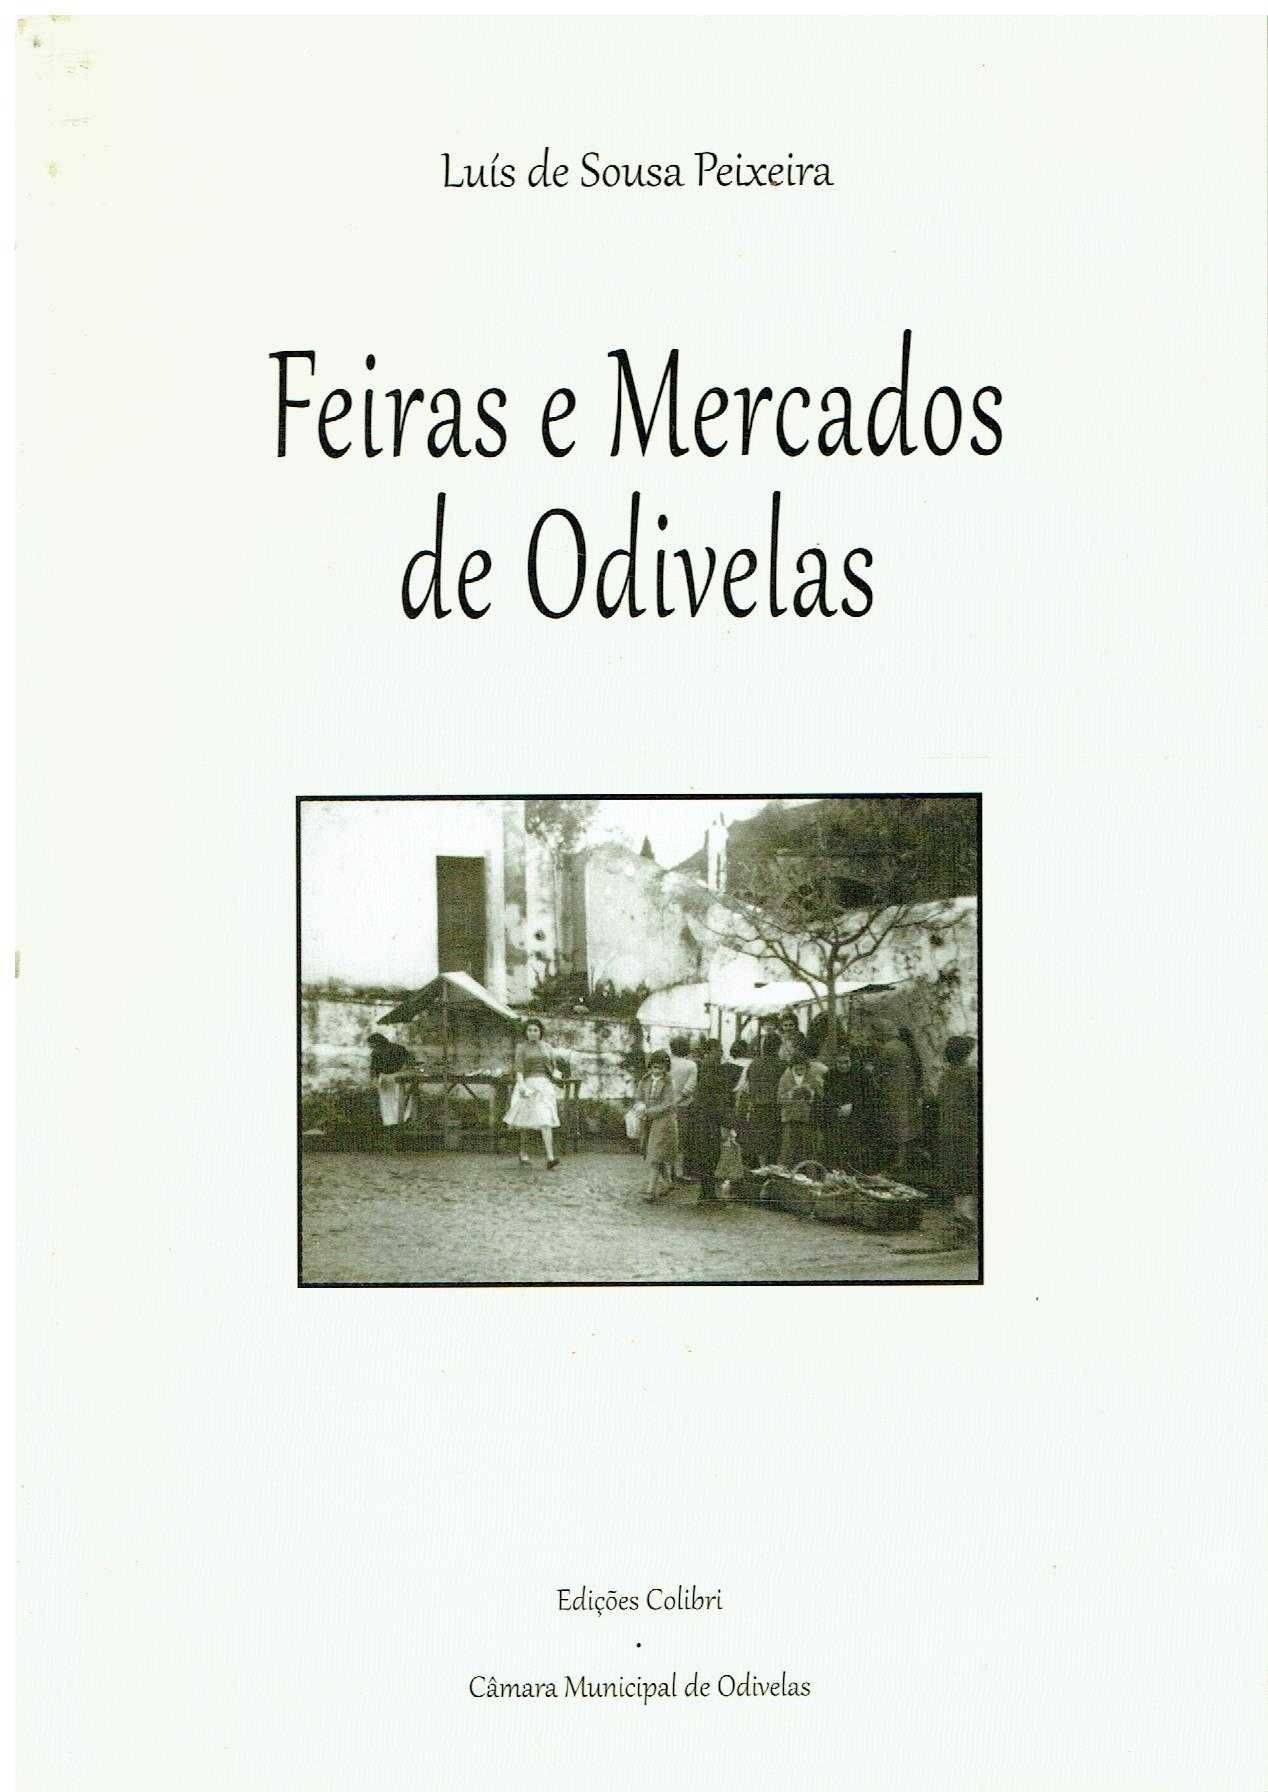 11066

Feiras e mercados de Odivelas 
de Luís de Sousa Peixeira.